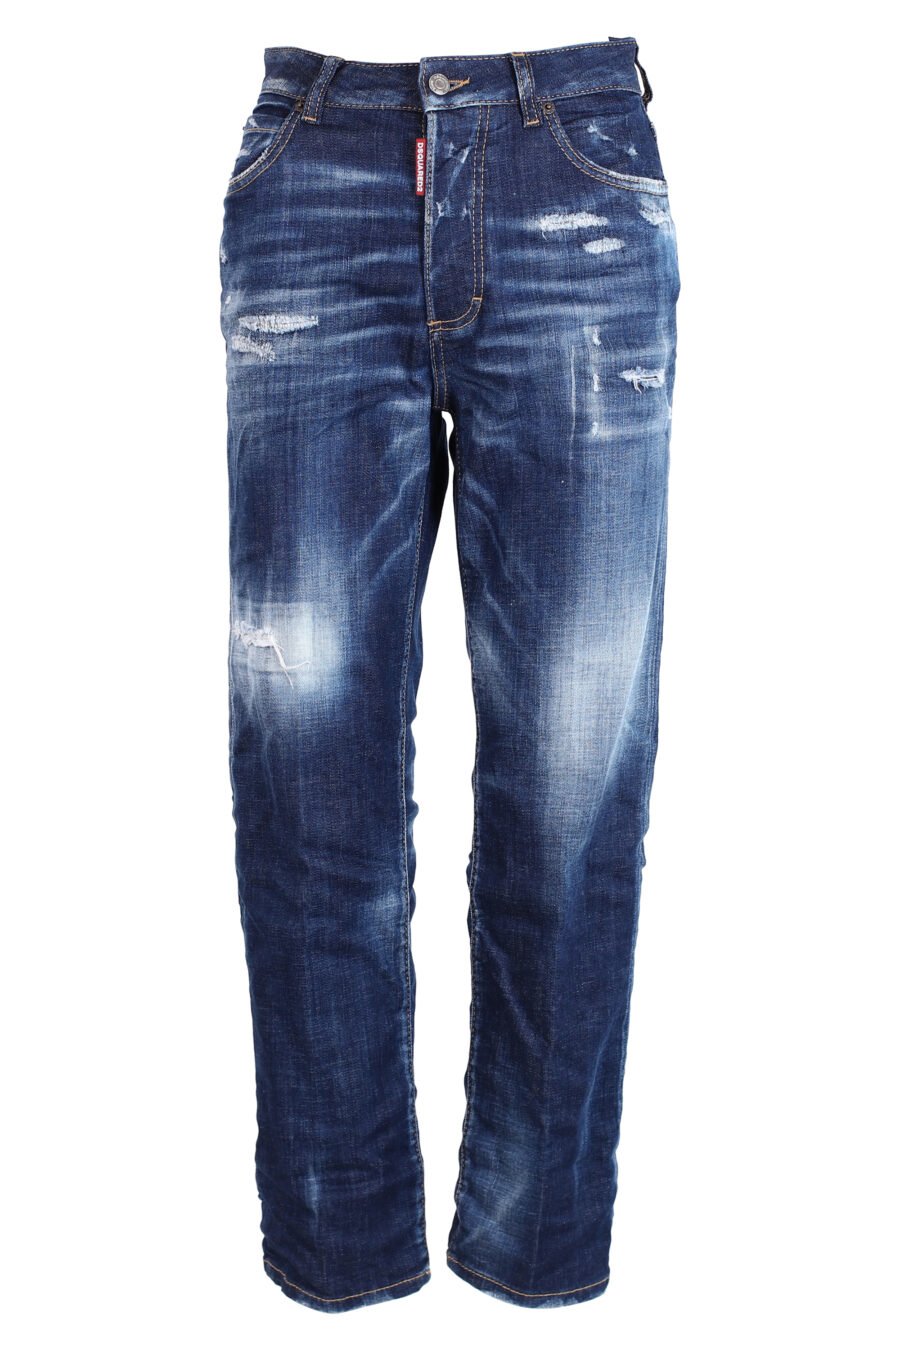 Jeans bleus "Boston Jean" - IMG 3303